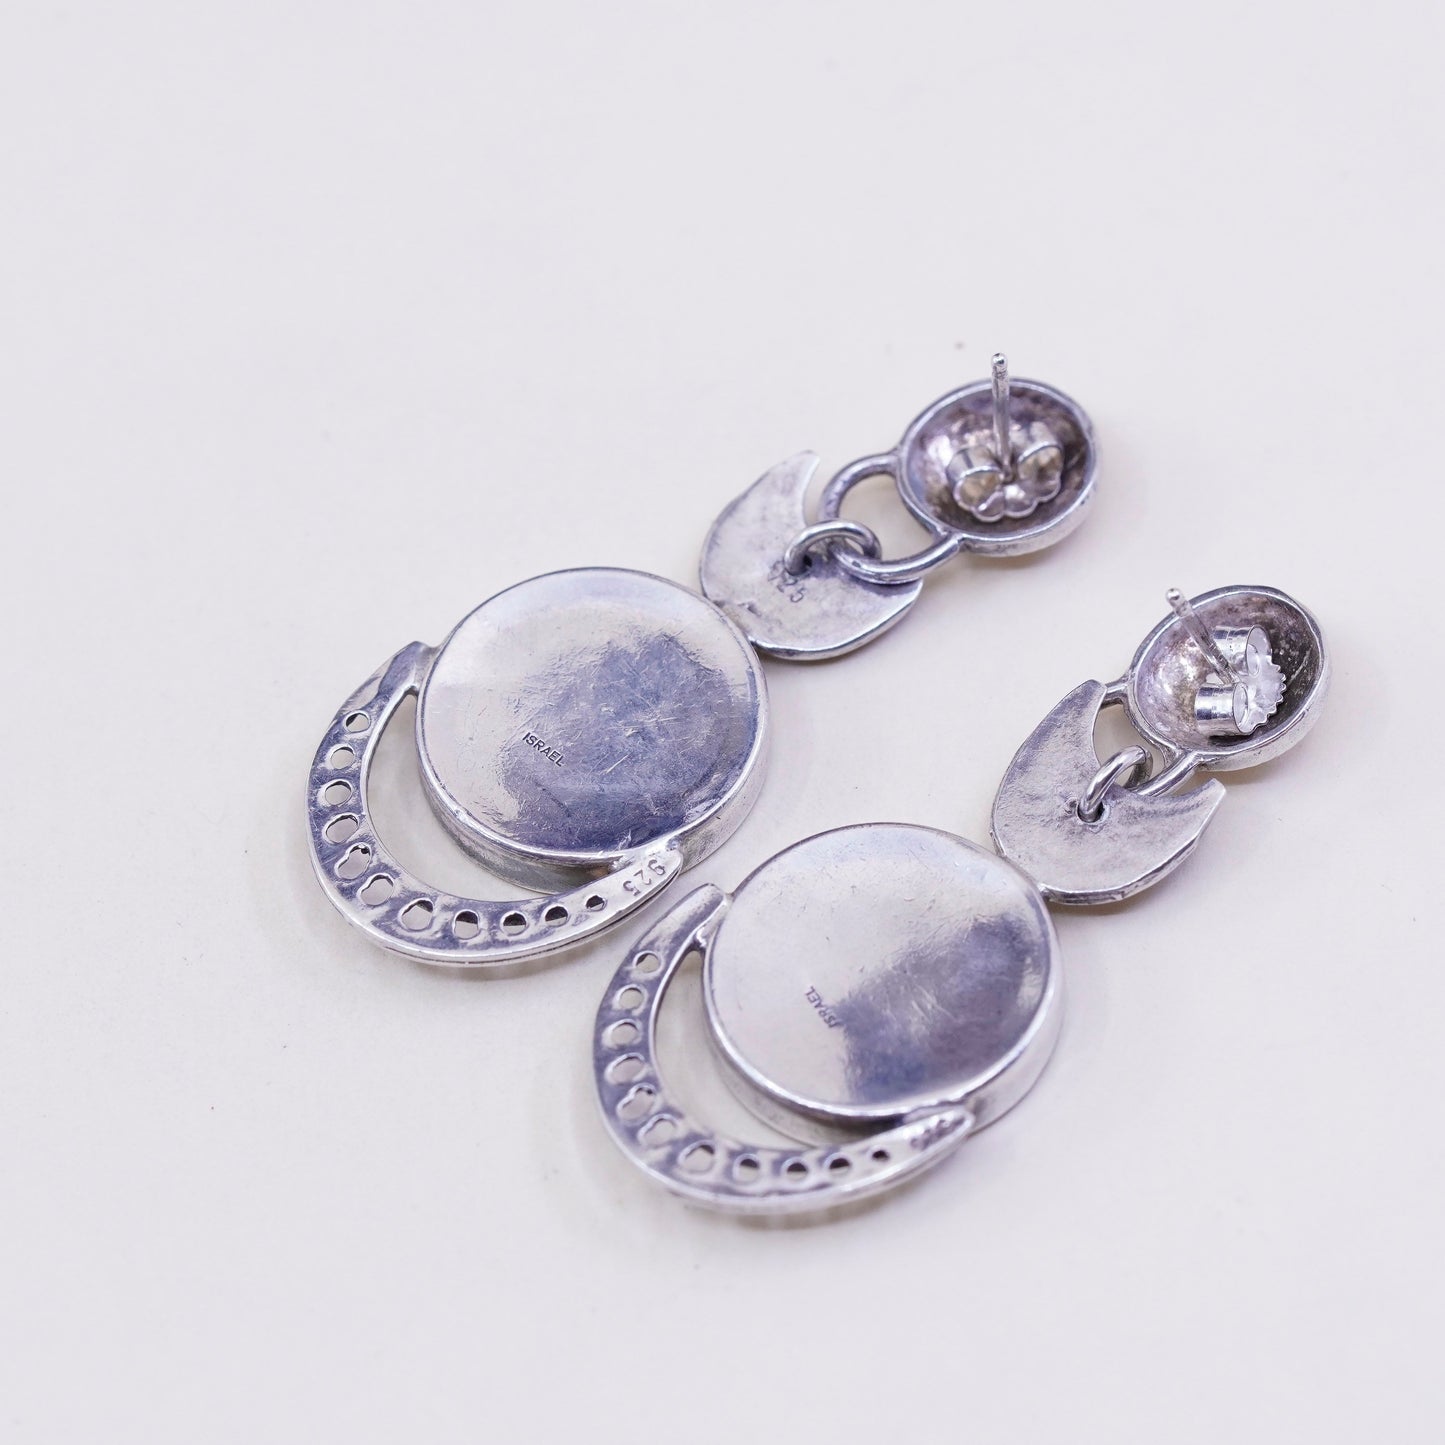 Vintage Israel Sterling 925 silver handmade earrings with obsidian